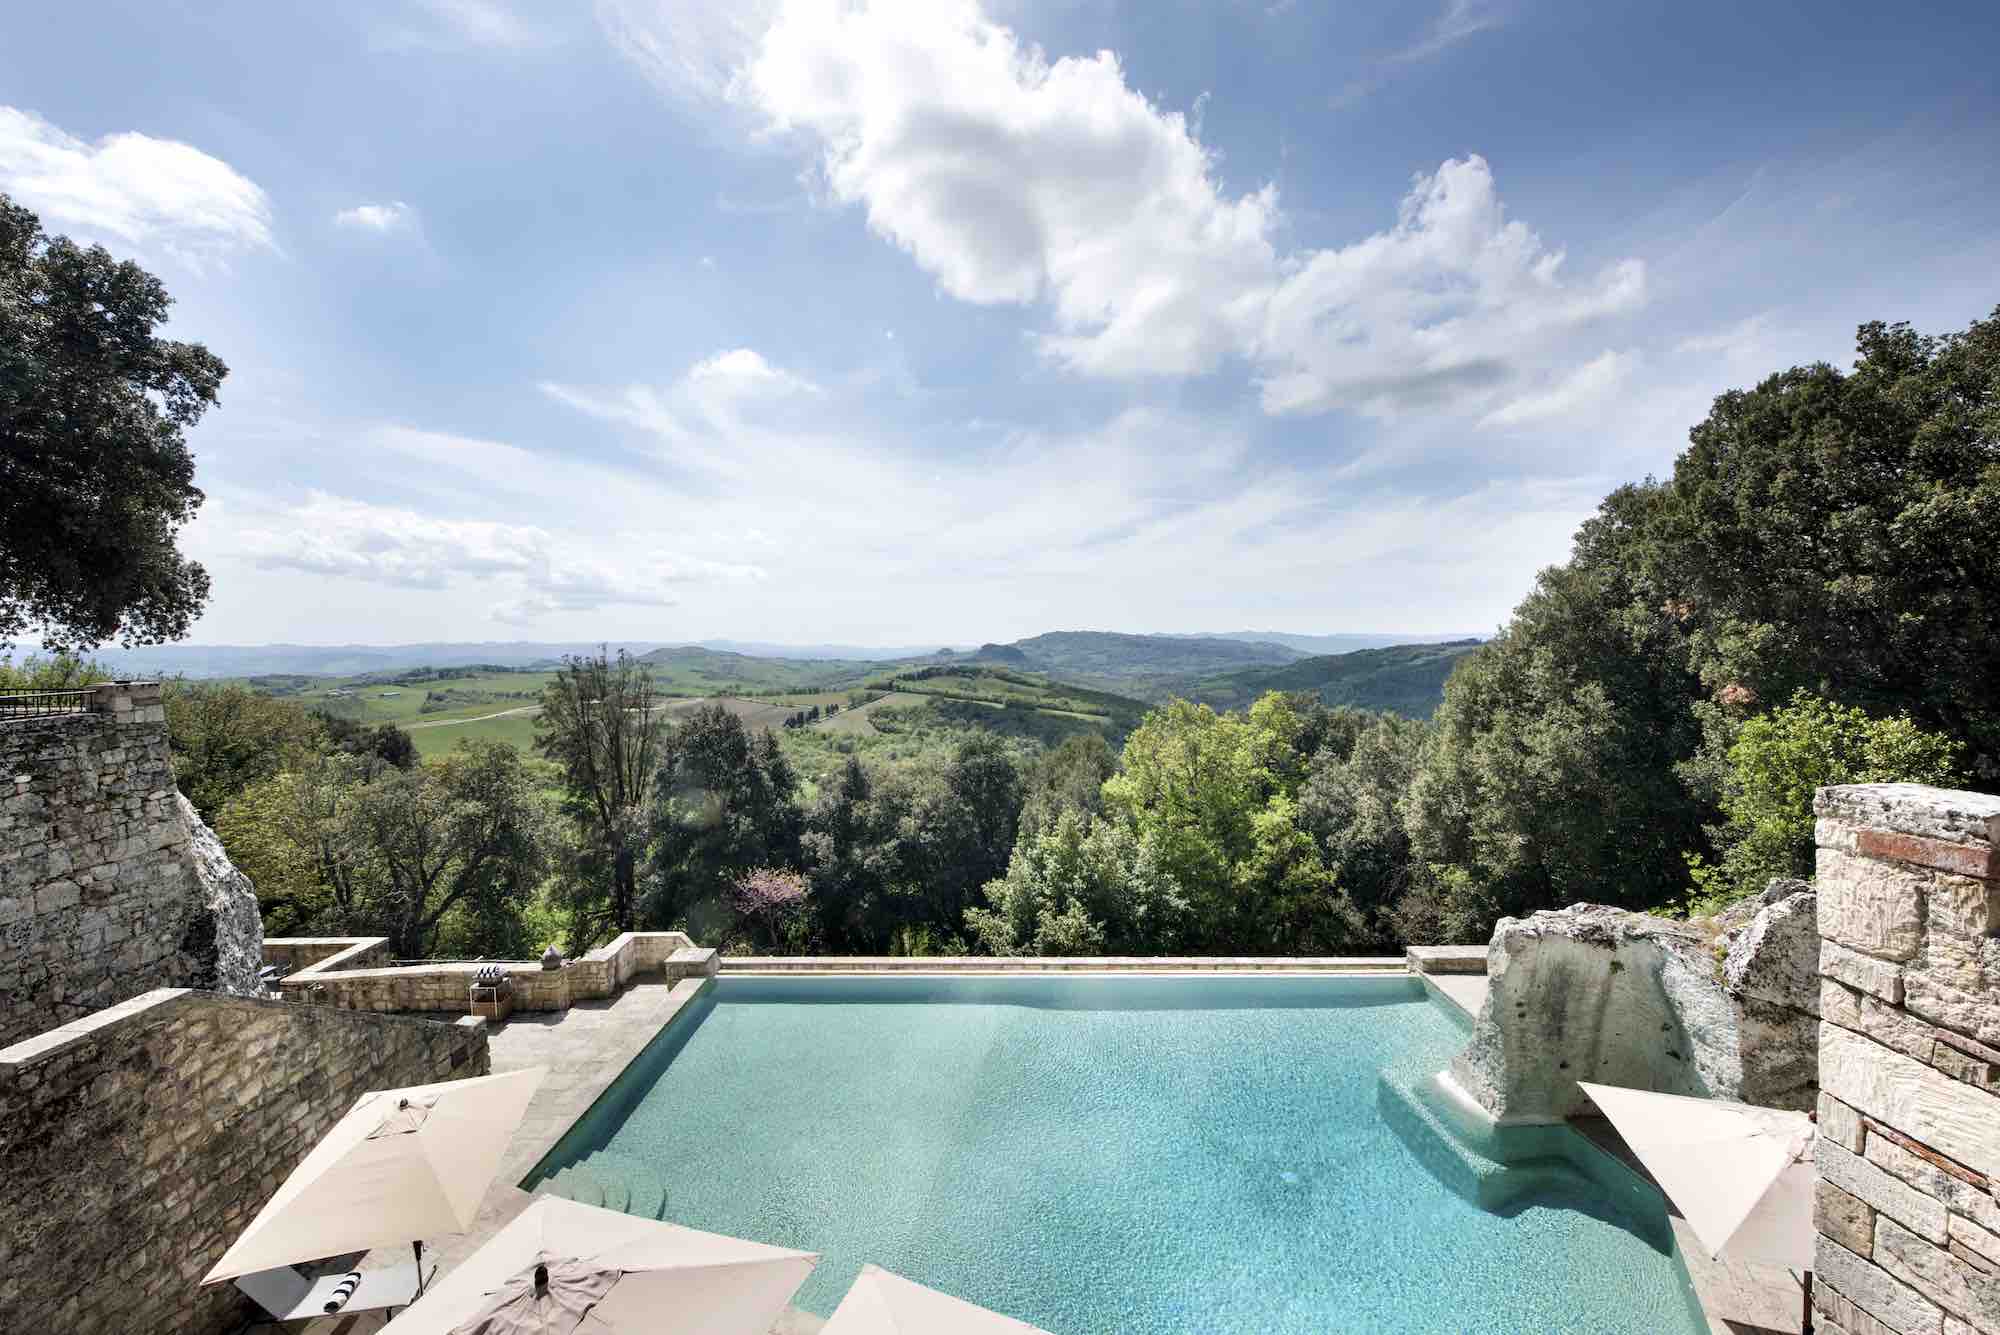 Piscina a sfioro e panorama dello Spa Hotel in Toscana Borgo Pignano a Volterra